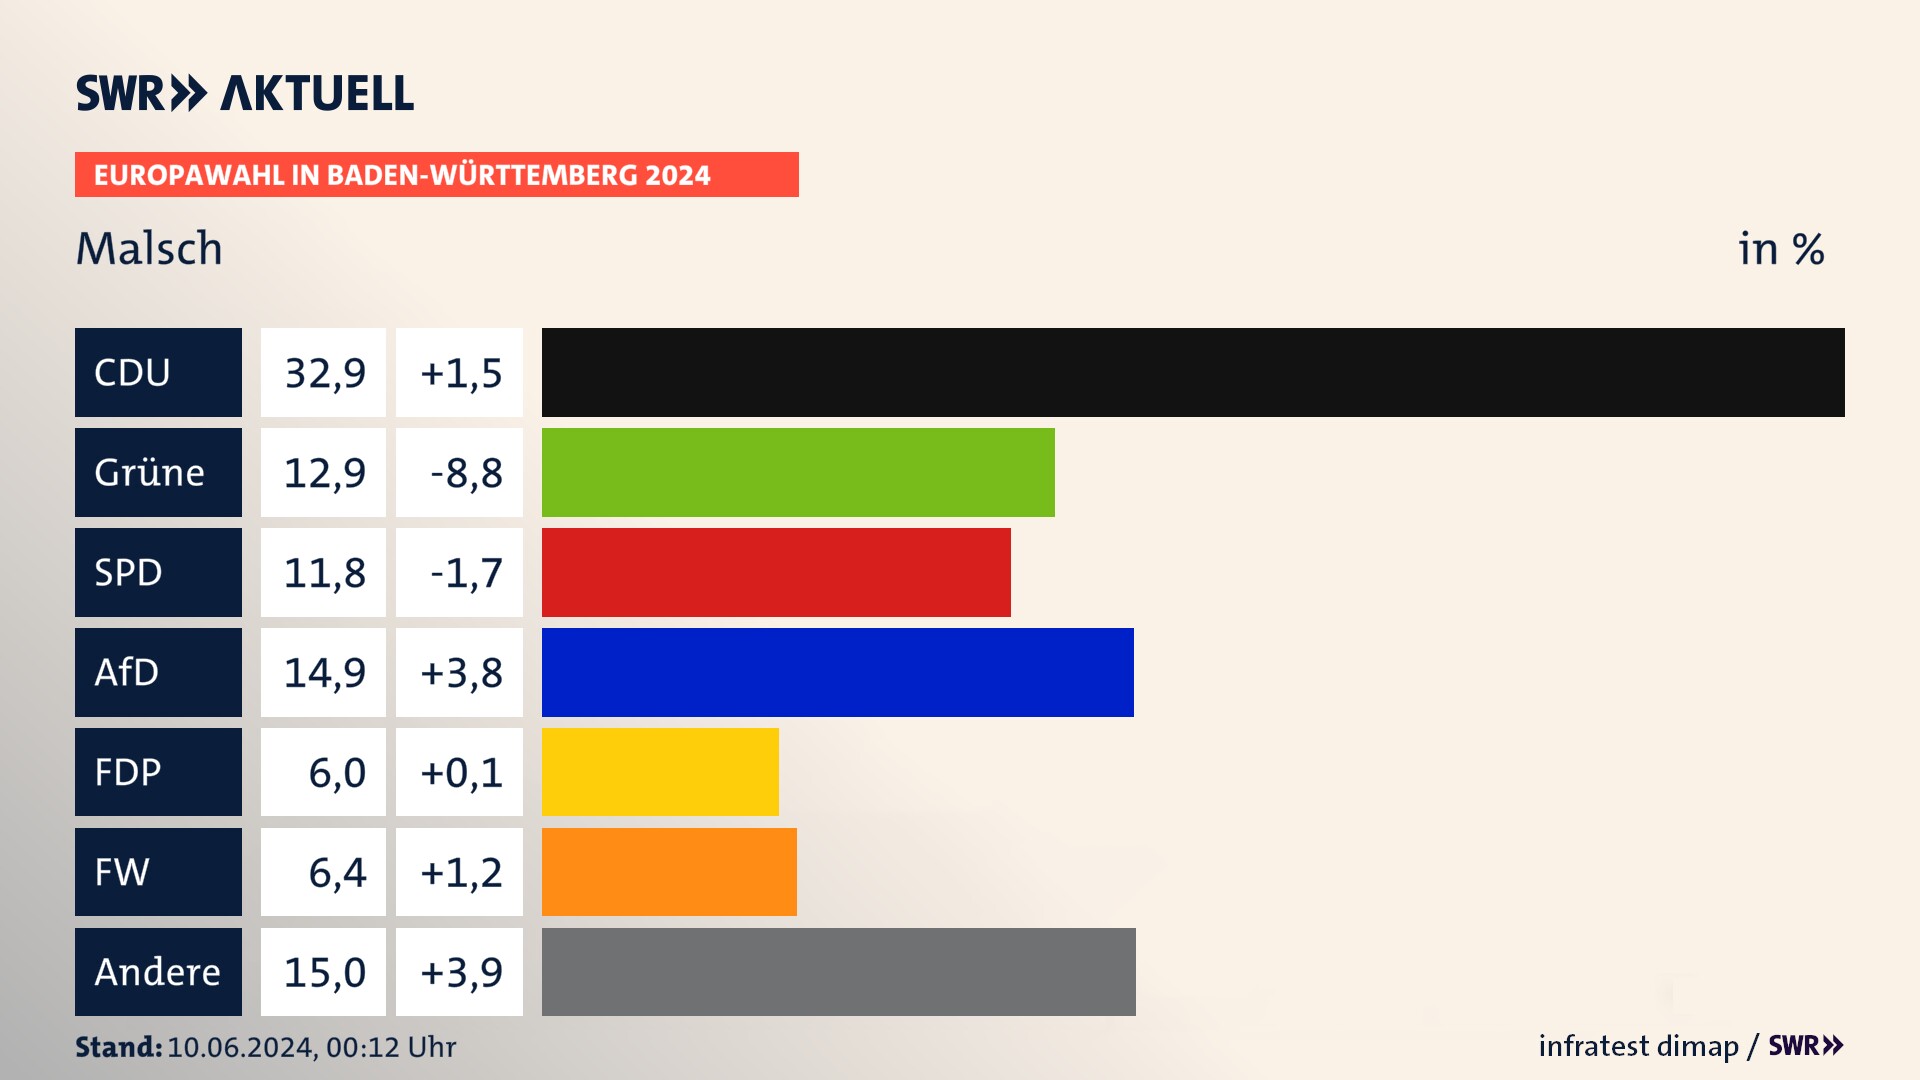 Europawahl 2024 Endergebnis Zweitstimme für Malsch. In Malsch erzielt die CDU 32,9 Prozent der gültigen  Stimmen. Die Grünen landen bei 12,9 Prozent. Die SPD erreicht 11,8 Prozent. Die AfD kommt auf 14,9 Prozent. Die FDP landet bei 6,0 Prozent. Die Freien Wähler erreichen 6,4 Prozent.